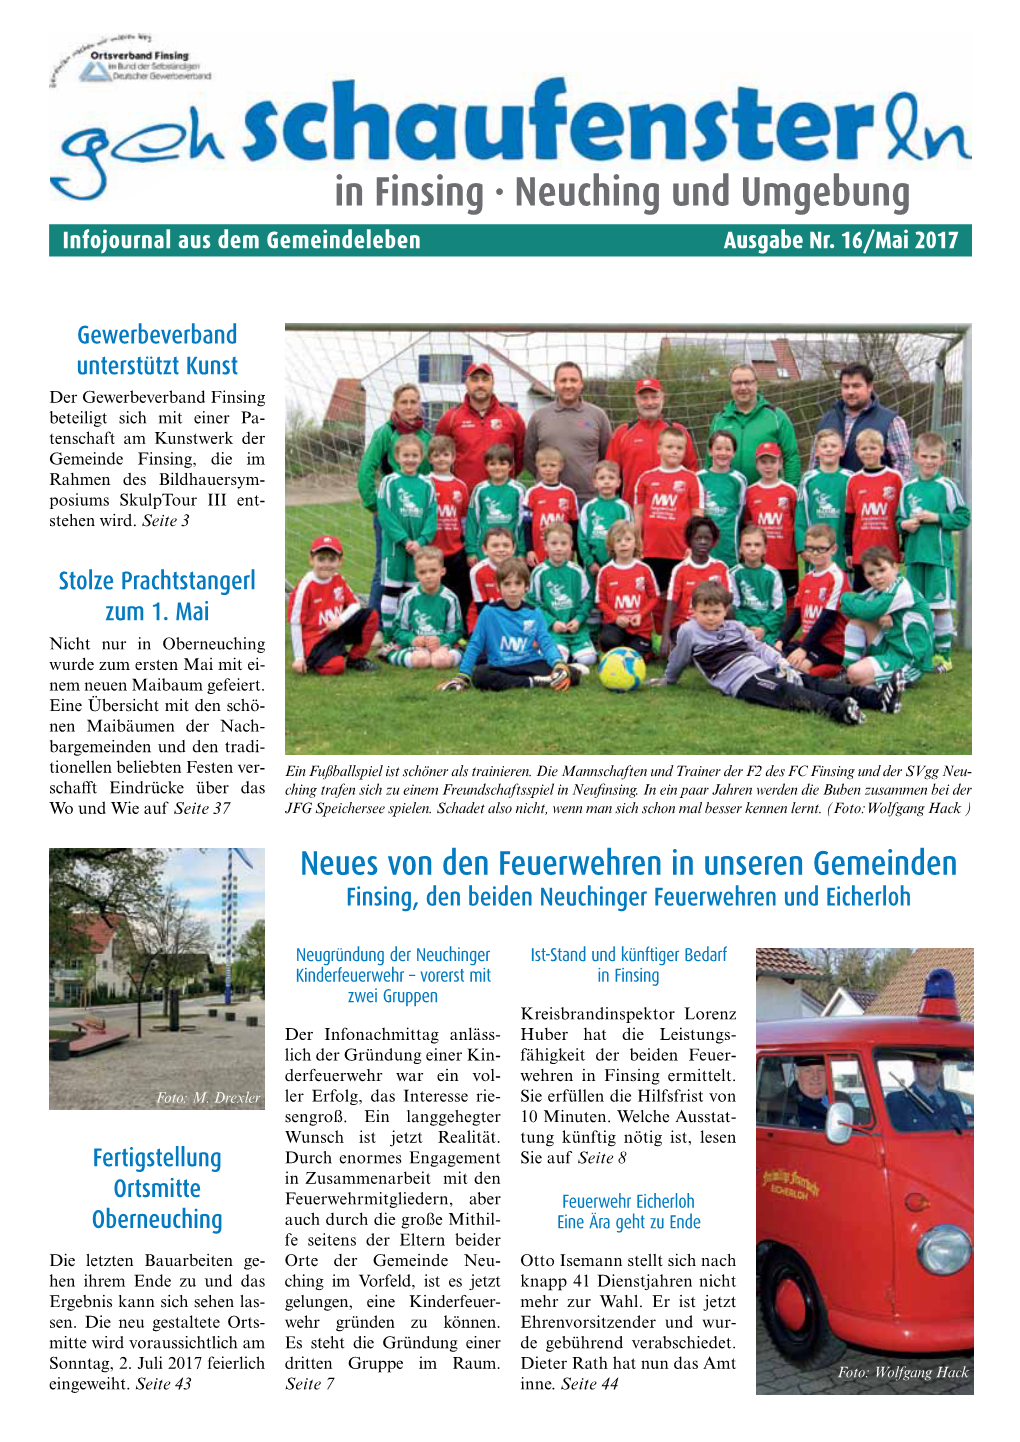 Neuching Und Umgebung Infojournal Aus Dem Gemeindeleben Ausgabe Nr